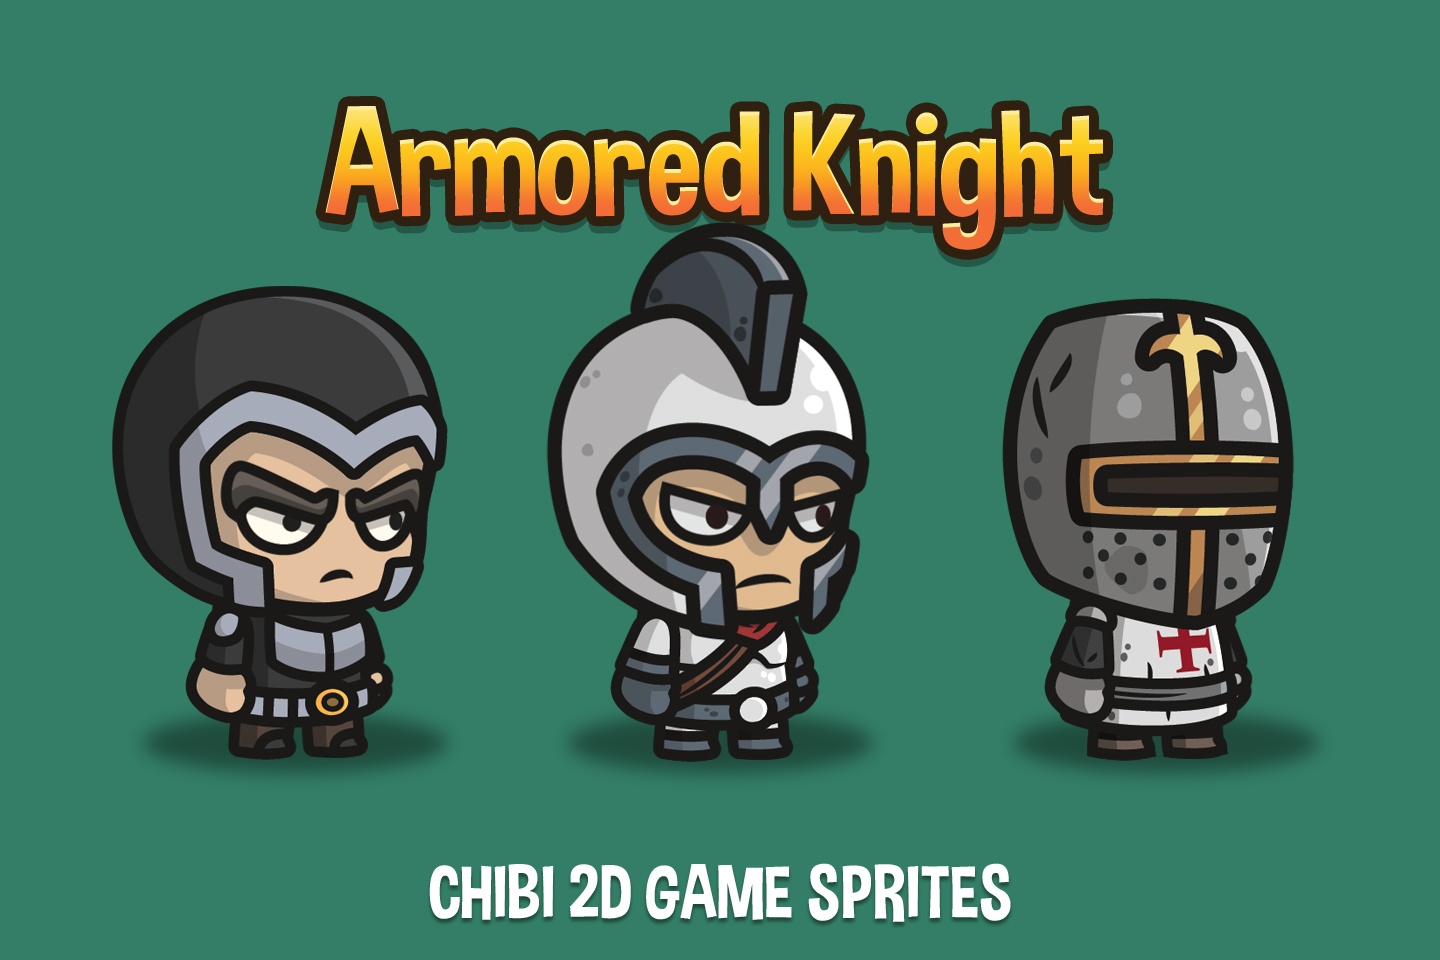 Armored Knight: Với chiến binh được bảo vệ bởi bộ giáp sắt, hình ảnh của chàng hiệp sĩ đầy uy nghi sẽ khiến bạn cảm thấy hào hứng và muốn khám phá thêm về cuộc phiêu lưu đầy mạo hiểm. Chiêm ngưỡng các hình ảnh về Armored Knight để khám phá thế giới chiến đấu huyền thoại.